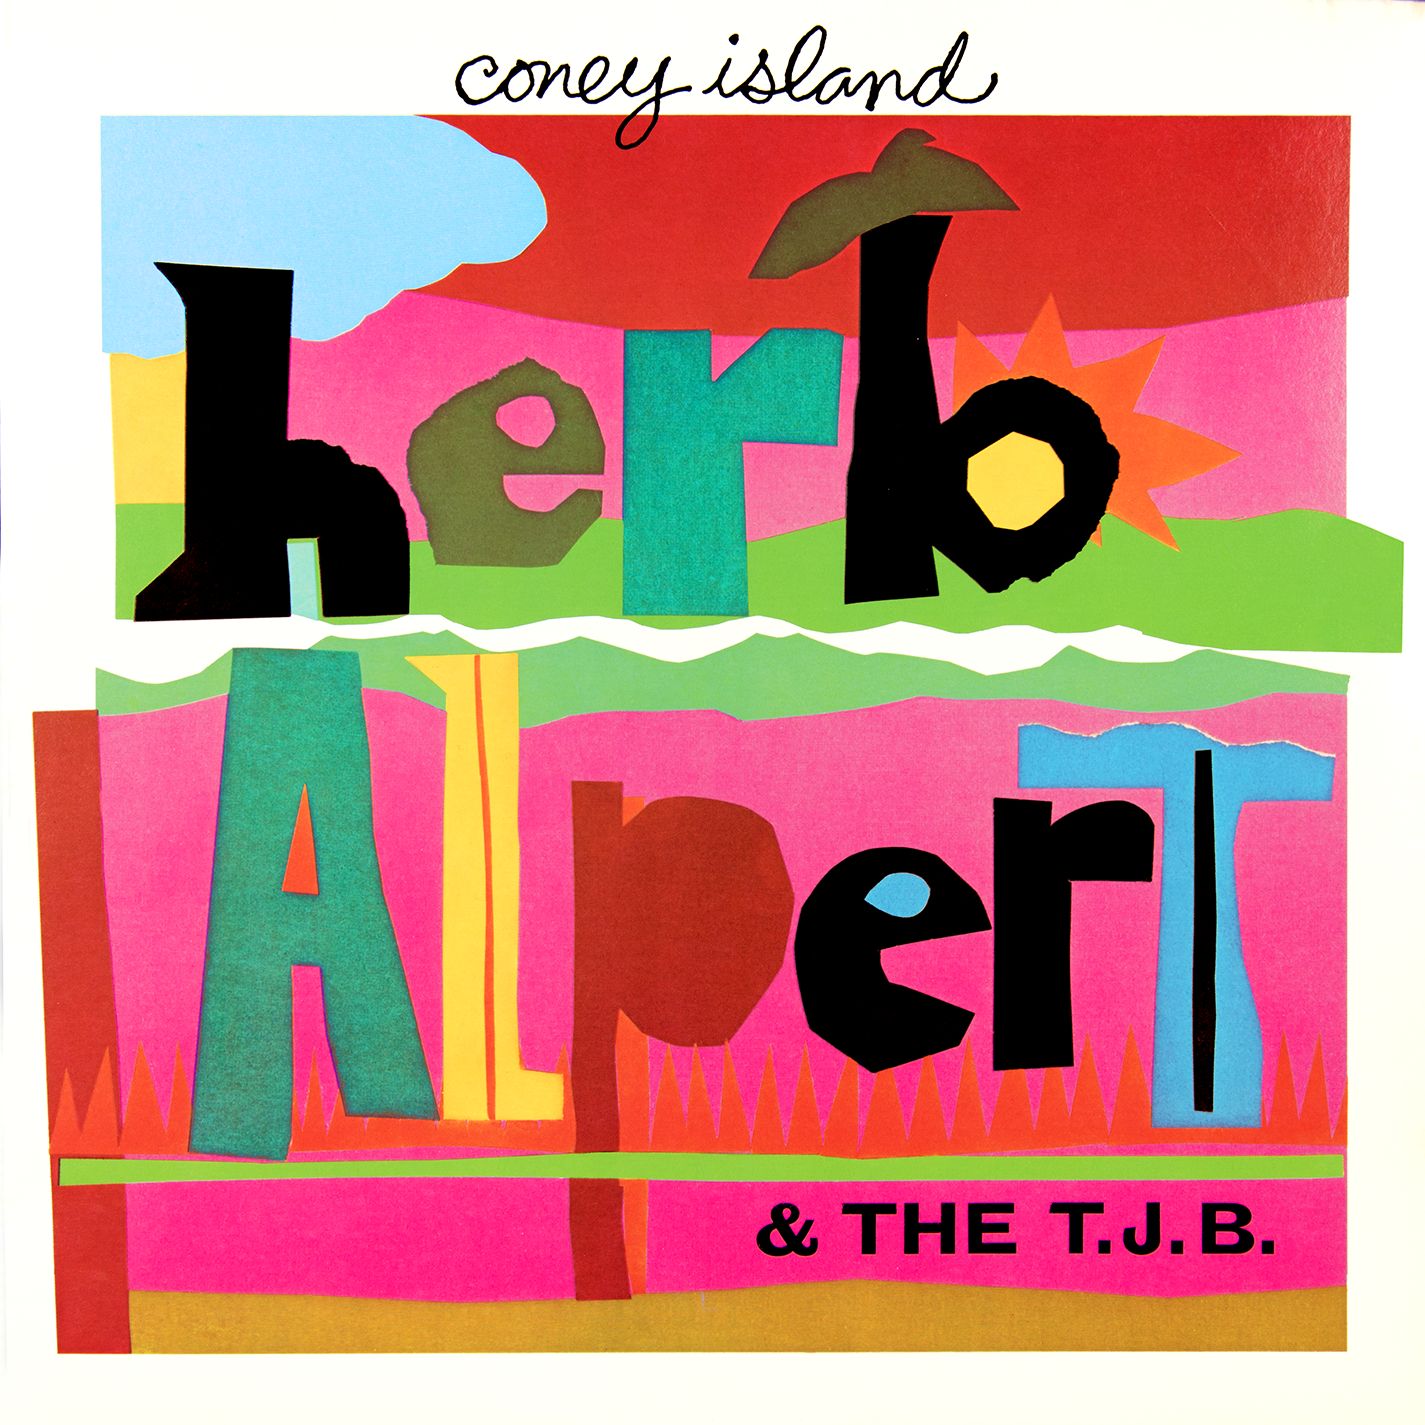 Herb Alpert & The Tijuana Brass - Coney Island (1975/2015) [AcousticSounds FLAC 24bit/88,2kHz]